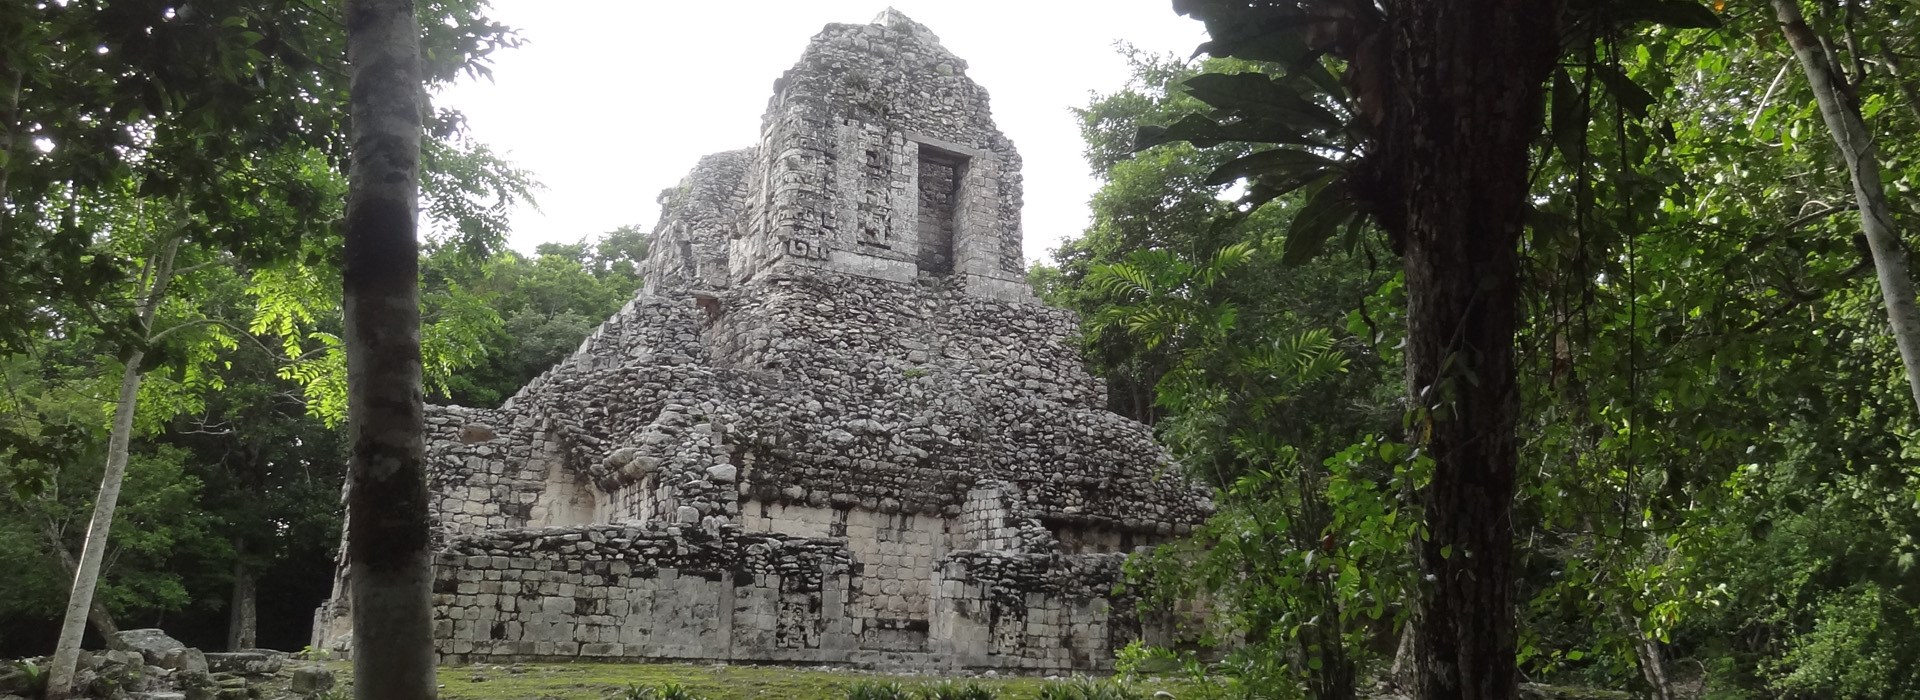 Visiter Le site archéologique de Chicana - Mexique